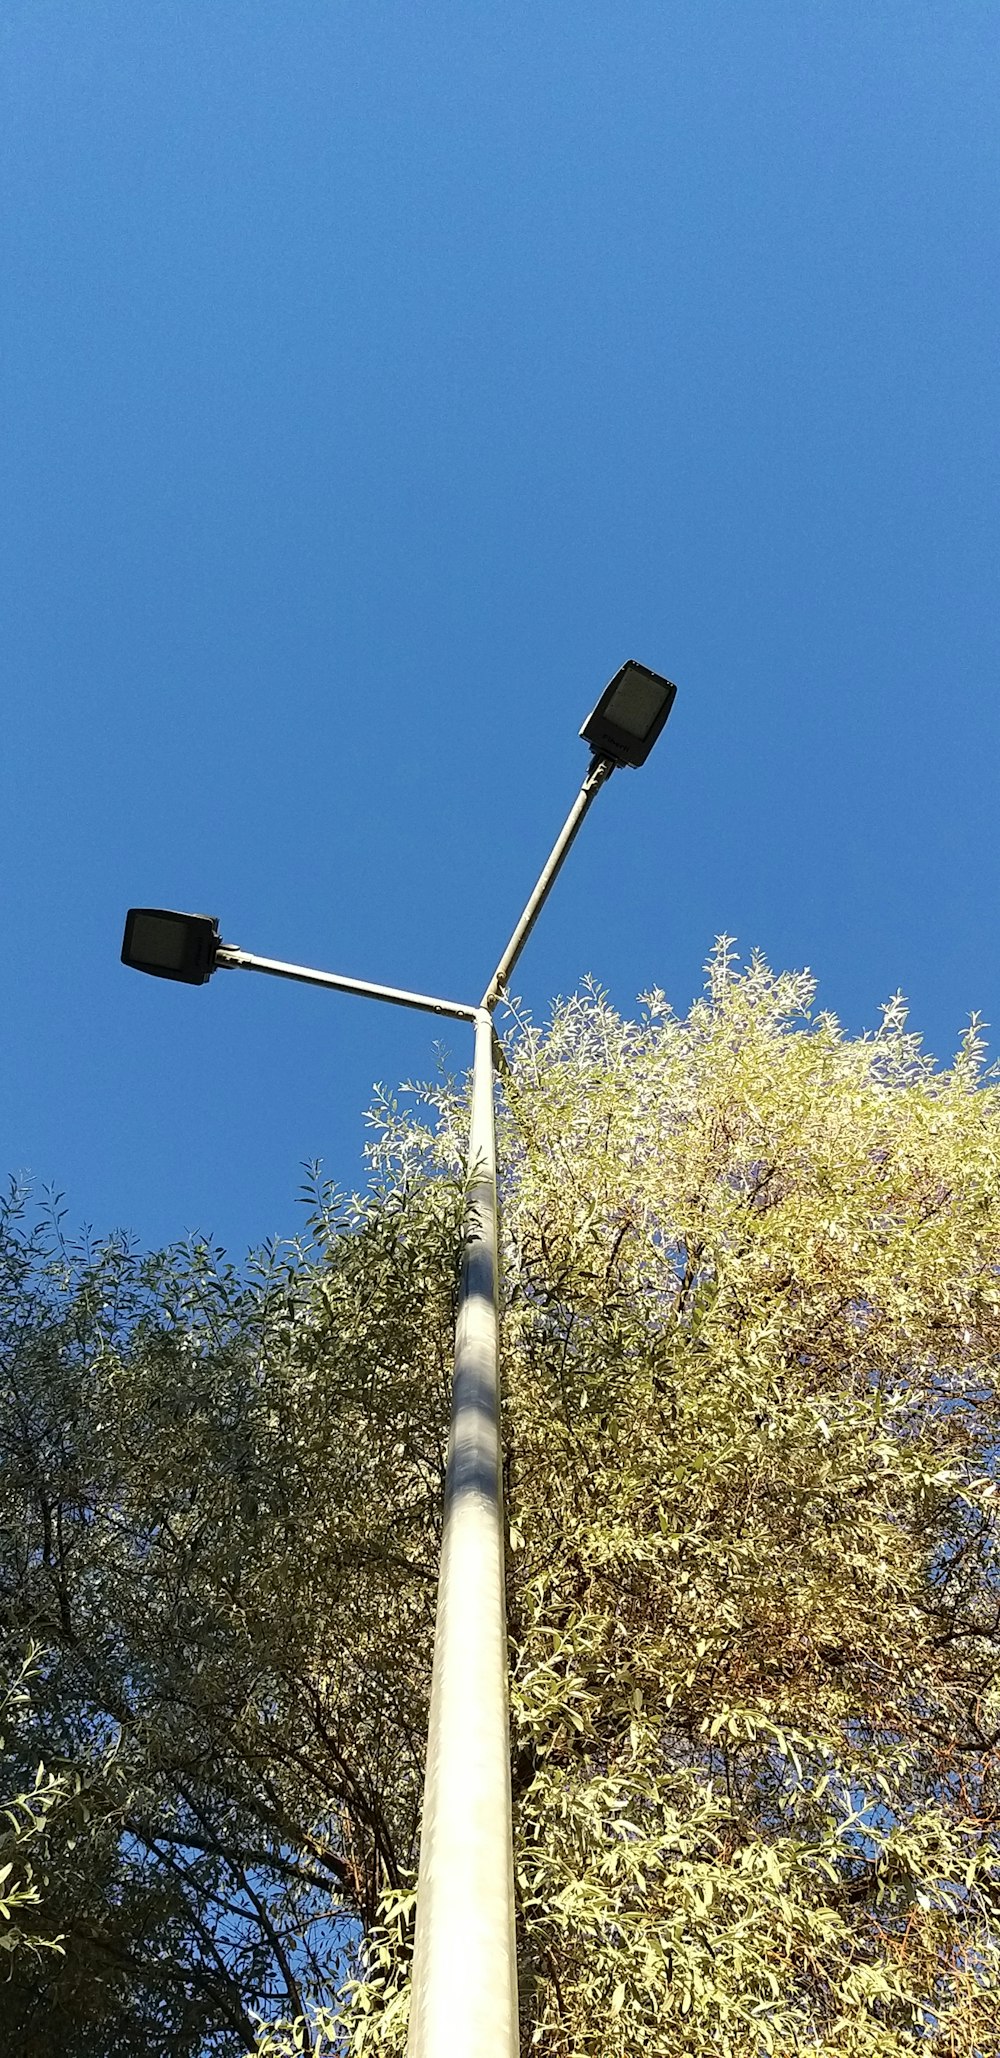 a street light with a street light